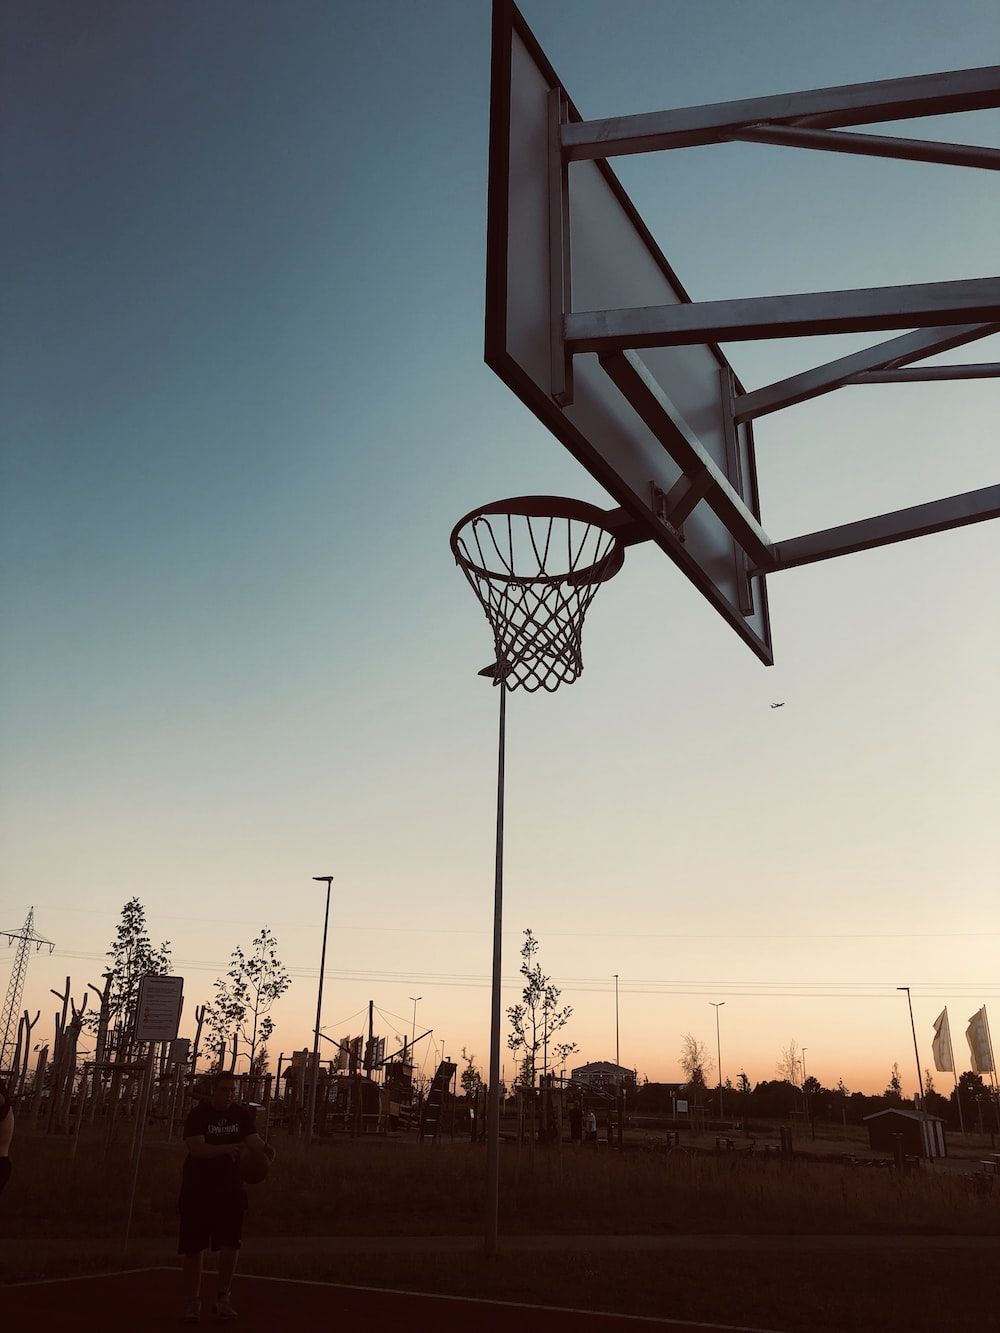 A basketball hoop on top of an outdoor court - Basketball